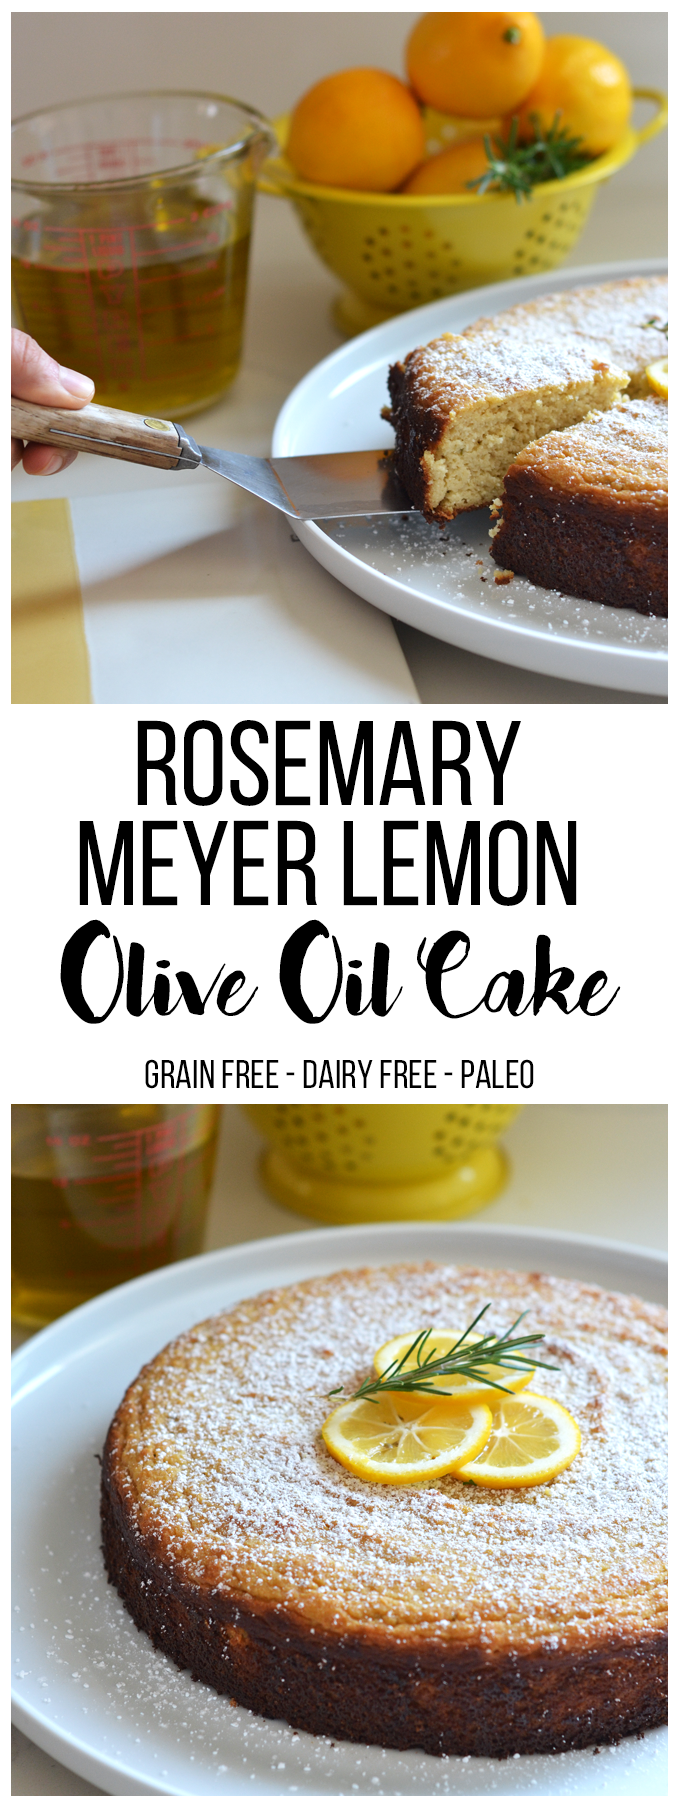  Questa torta di olio d'oliva al limone di rosmarino Meyer è senza cereali, senza zucchero raffinato e senza latticini aka-Paleo! Ha un sapore così favoloso ed è perfetto per qualsiasi festa o brunch!